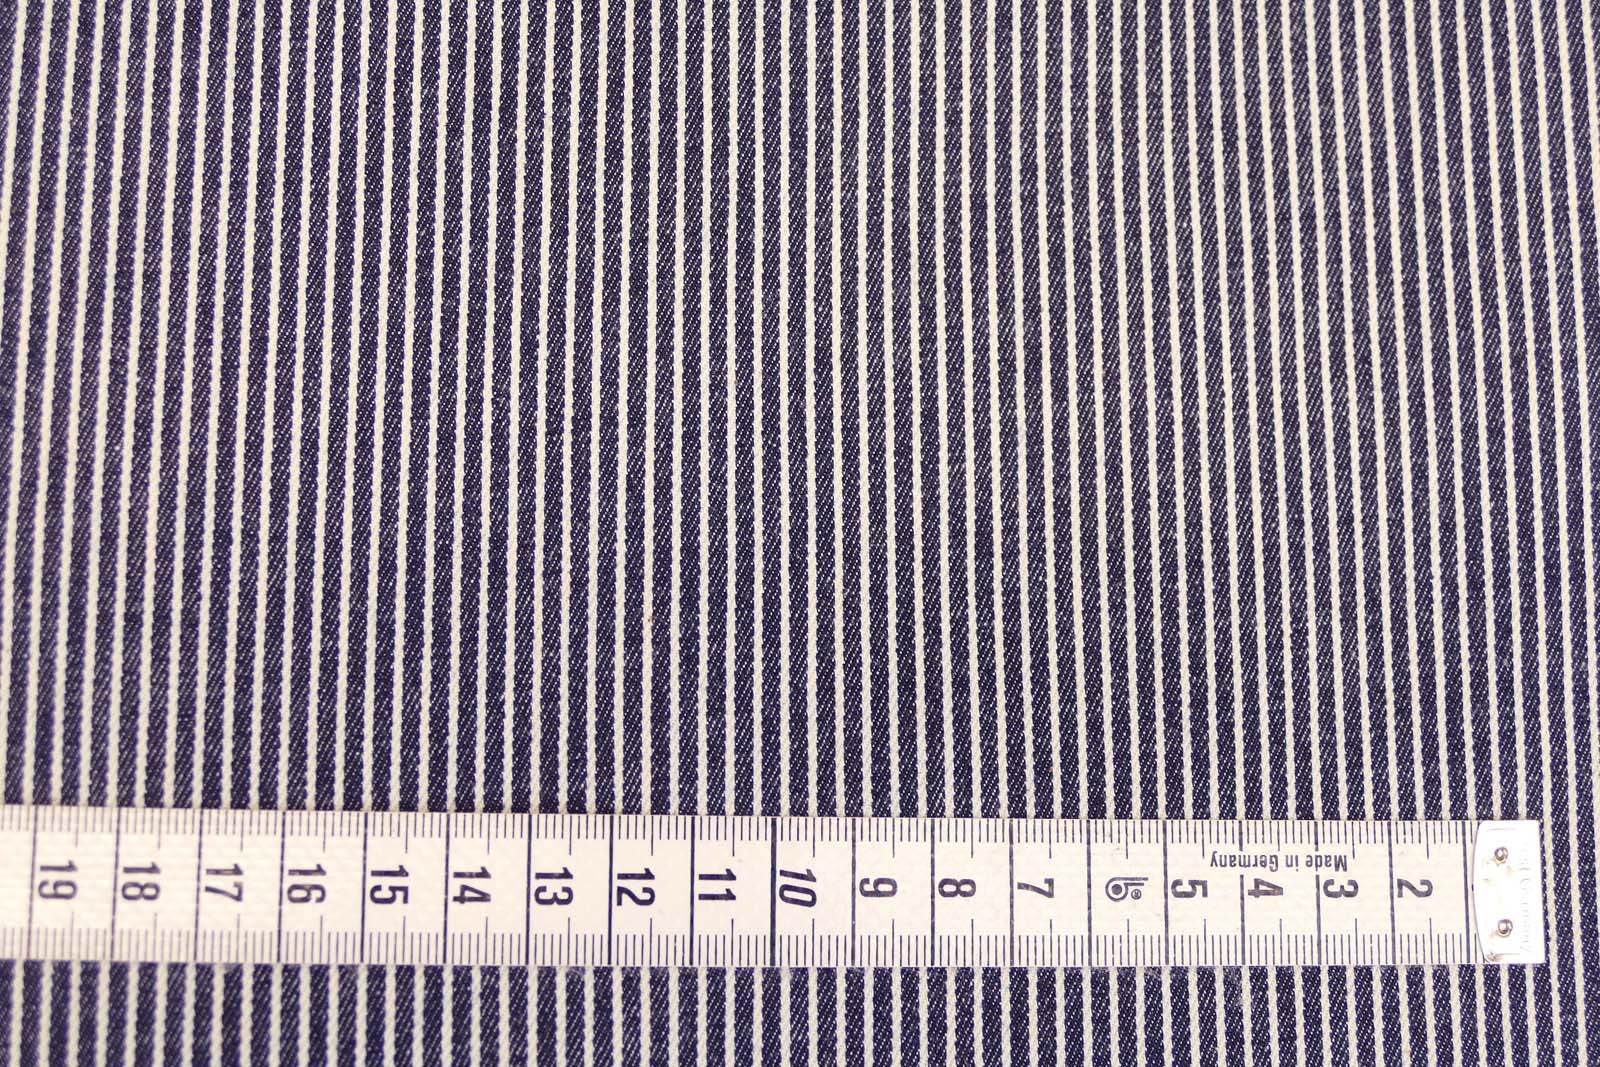 Jeansstretch Streifen dunkelblau weiß 518